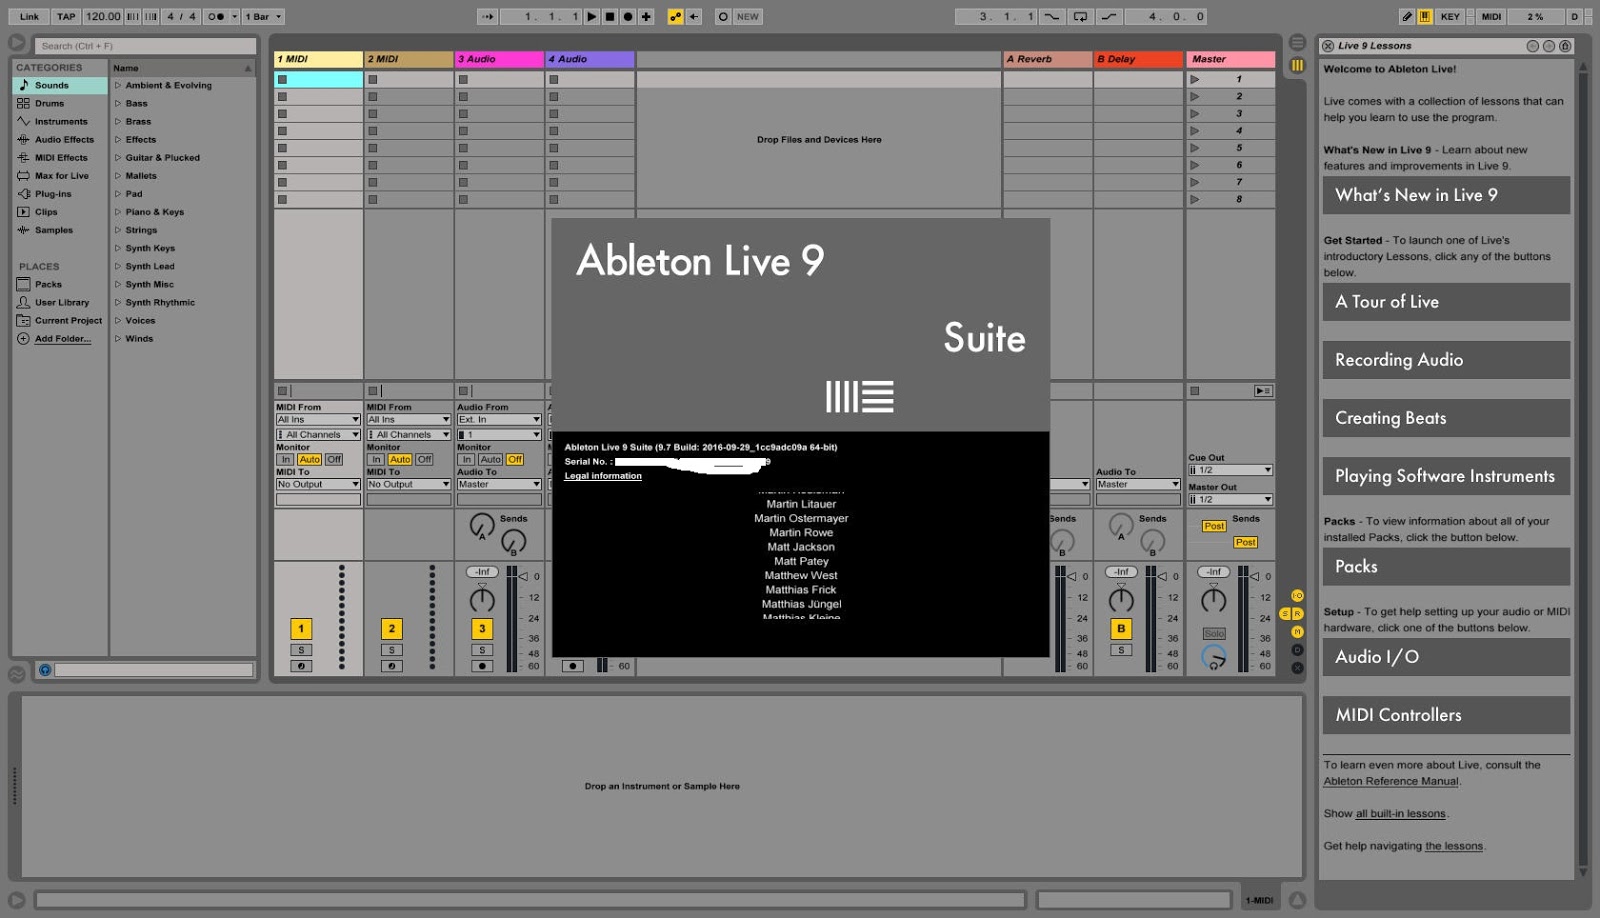 Ableton Live 9.7 Authorize.auz File